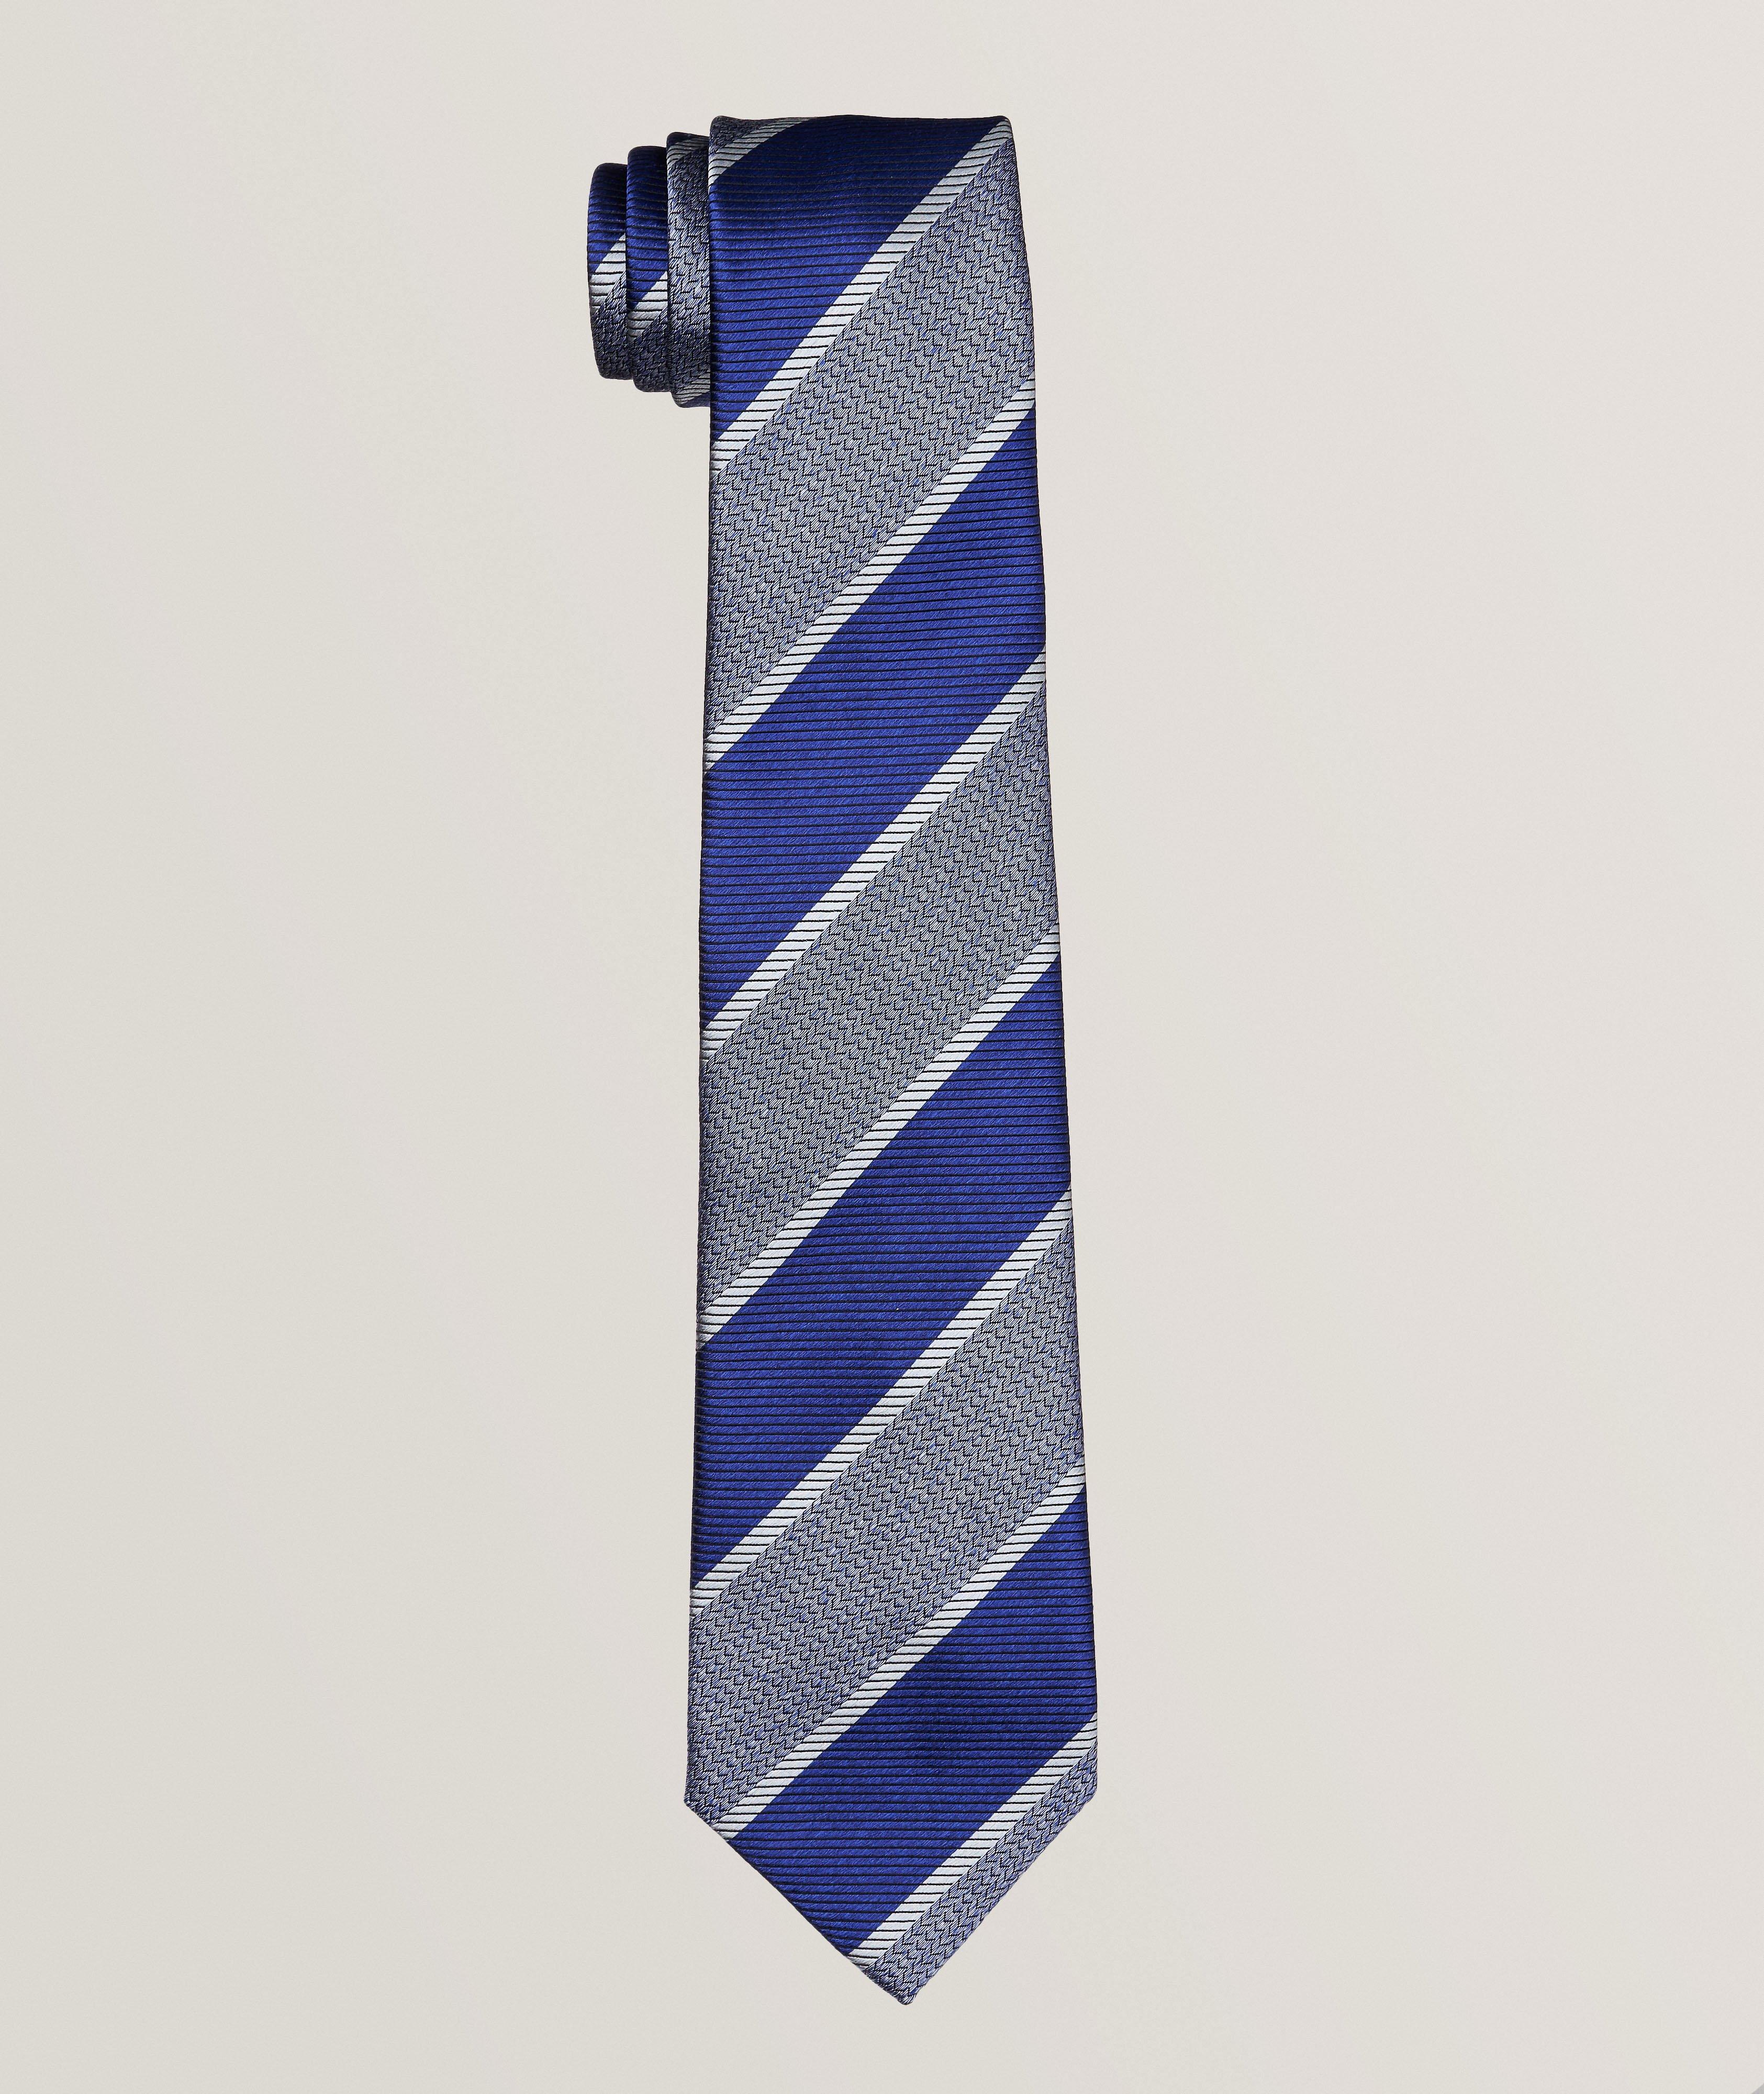 Brioni Striped Herringbone & Linear Weave Silk Tie